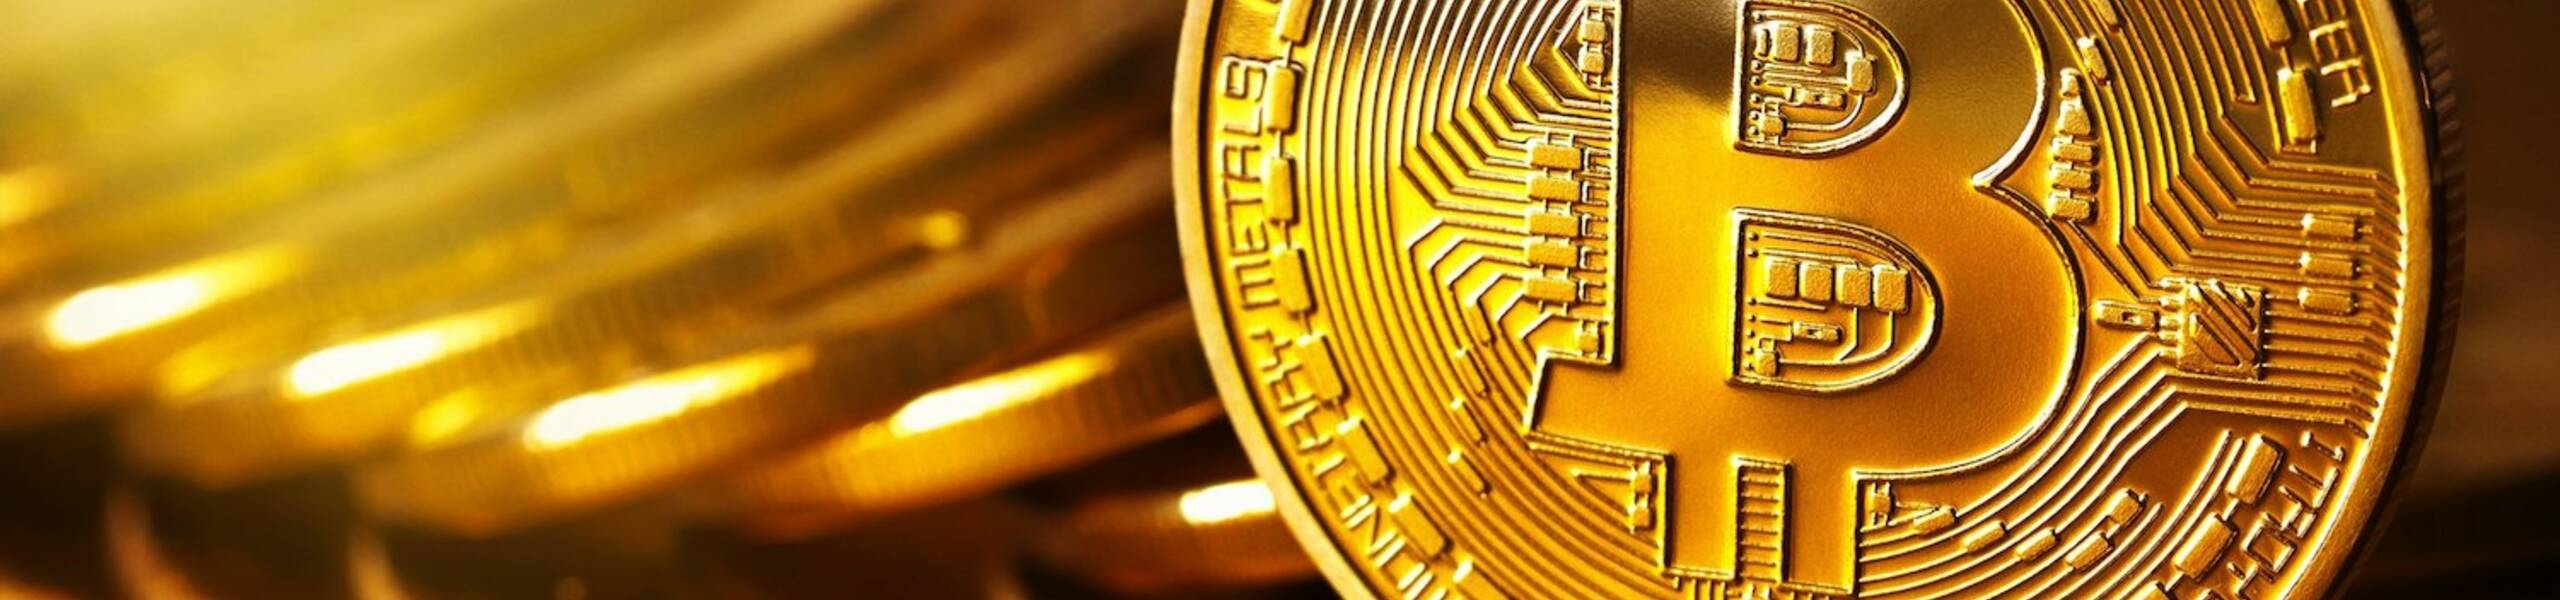 Does Bitcoin really have a fair value?